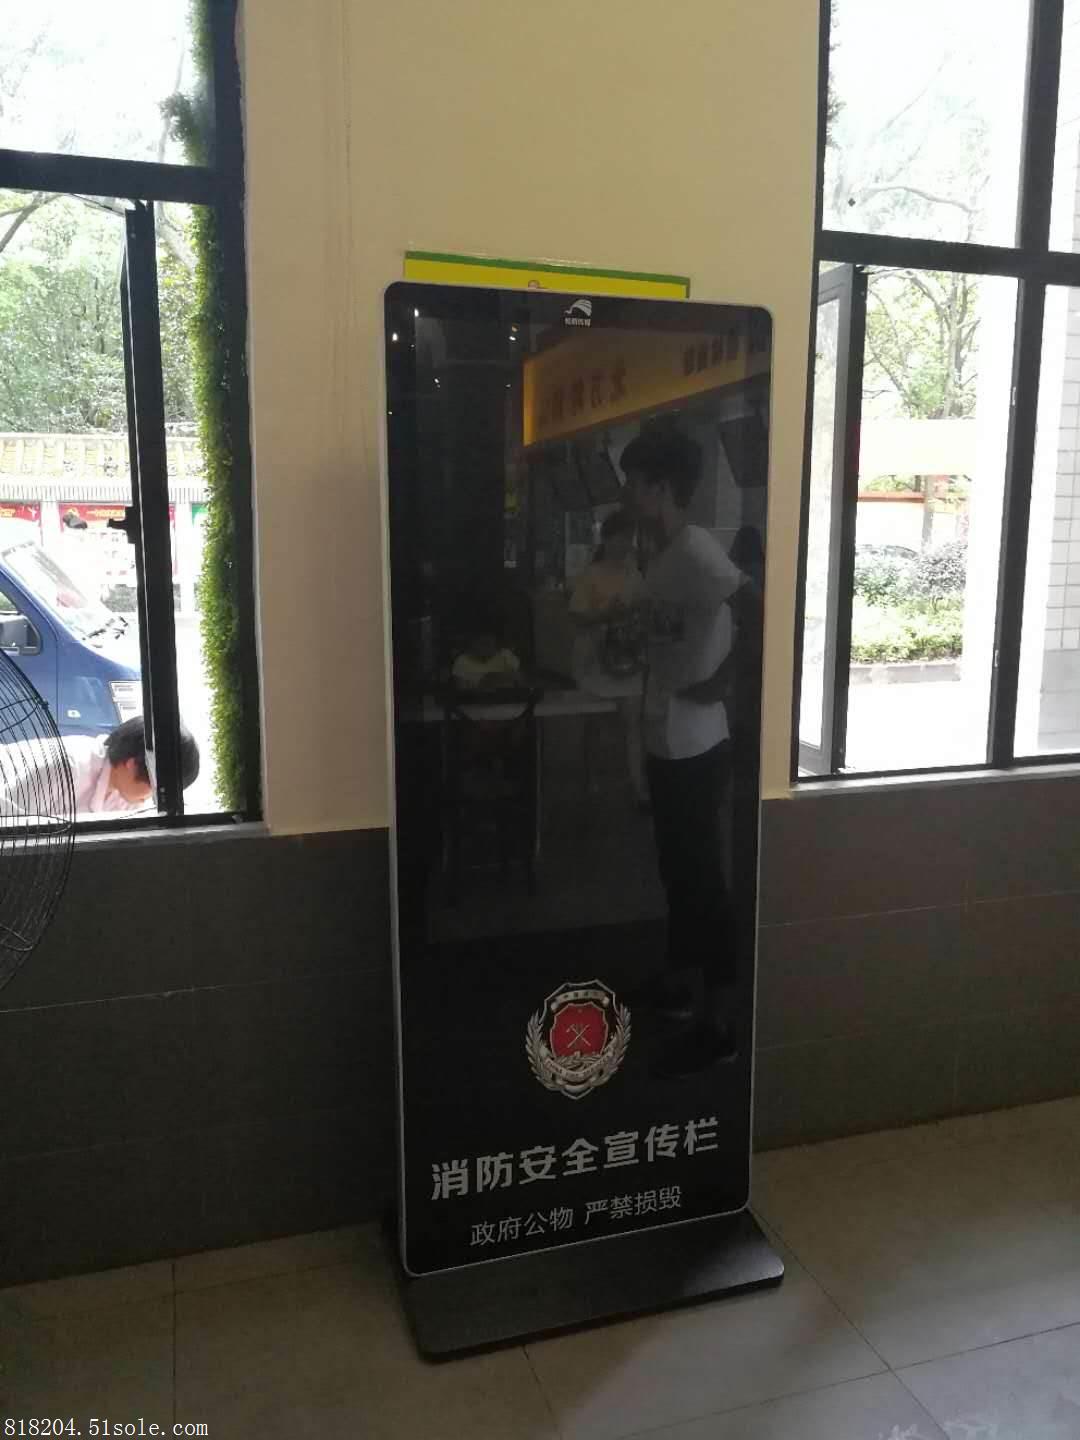 广州市回收广告机电话厂家回收广告机电话13533571388  回收广告机 回收广告机热线 55寸广告机回收